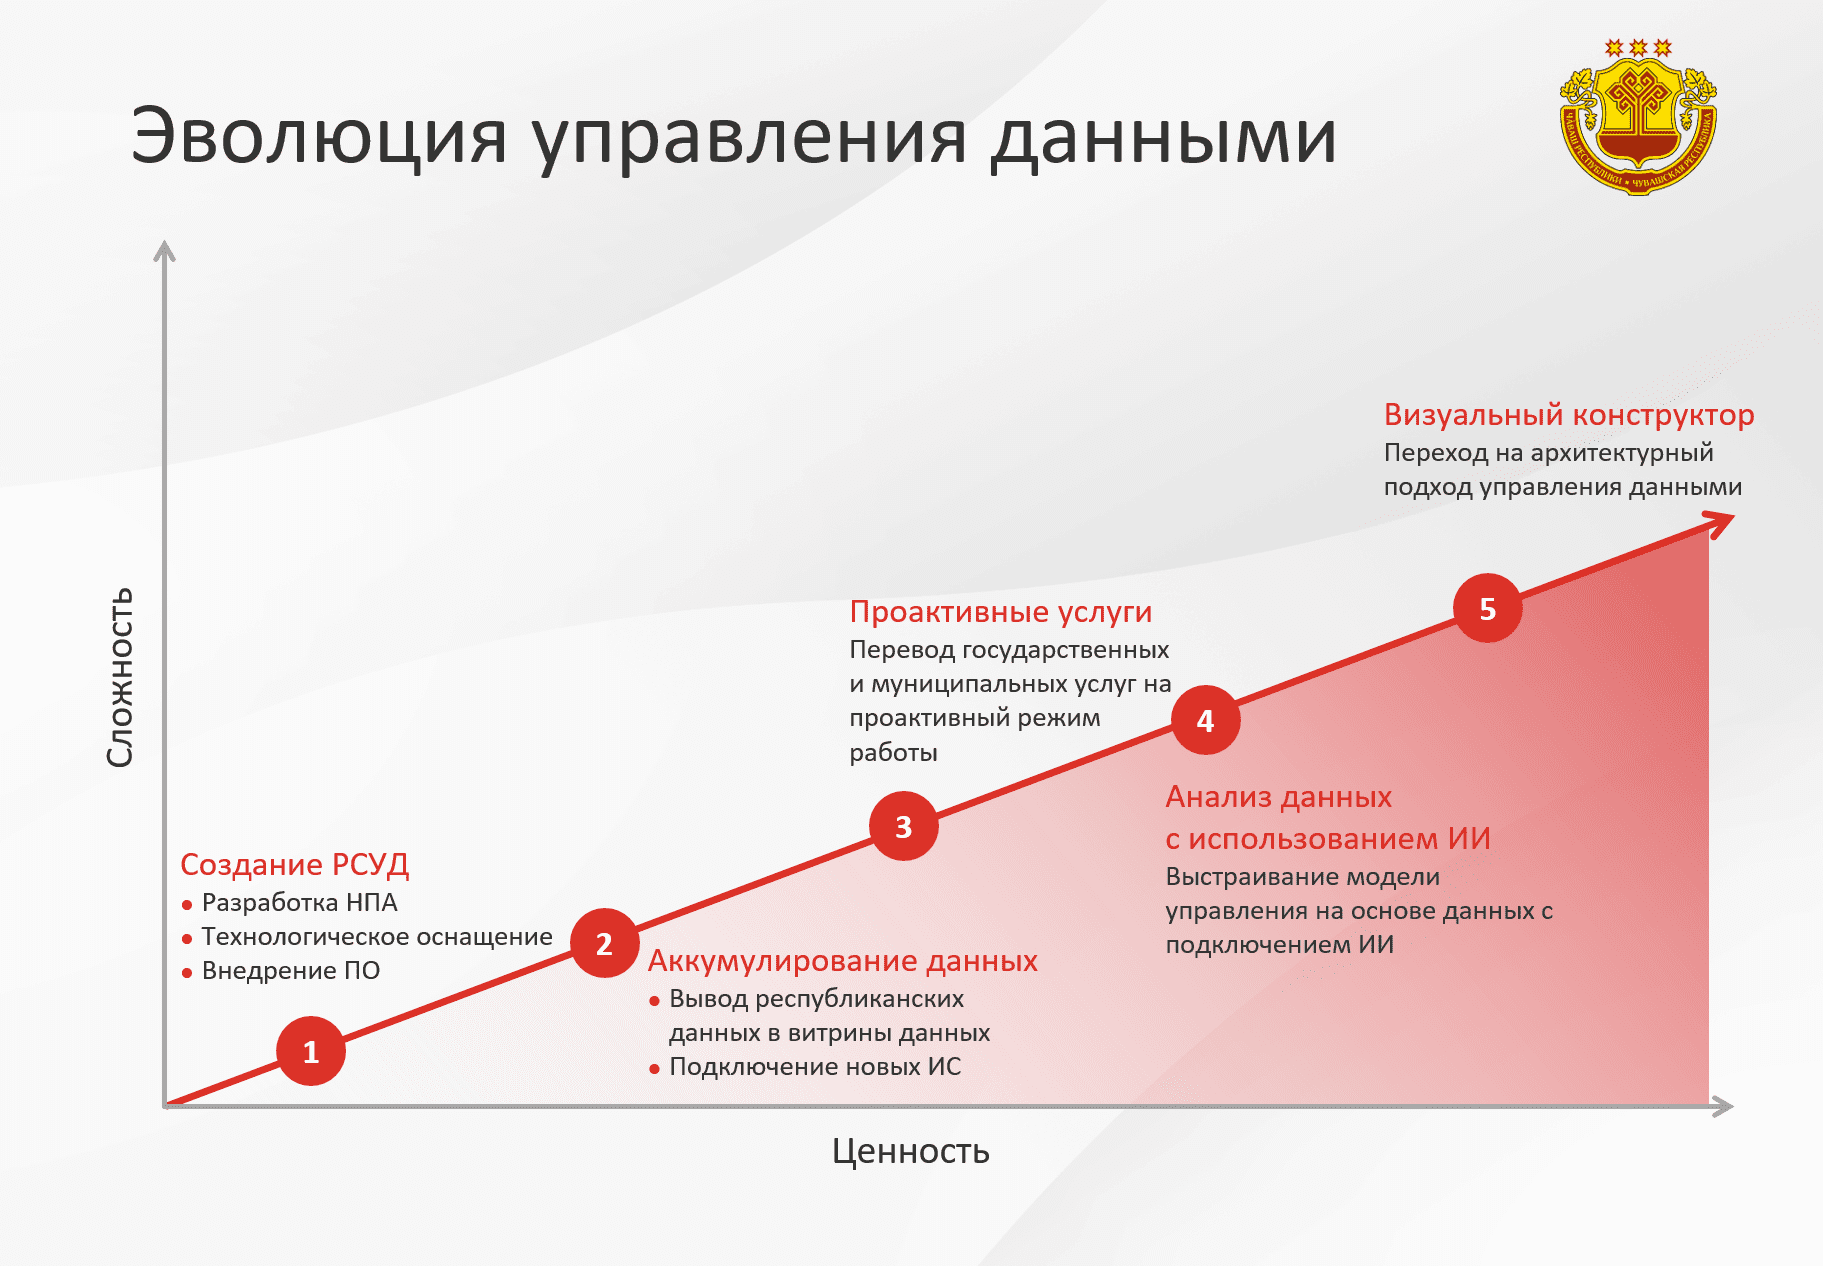 Опыт Чувашской Республики по управлению данными